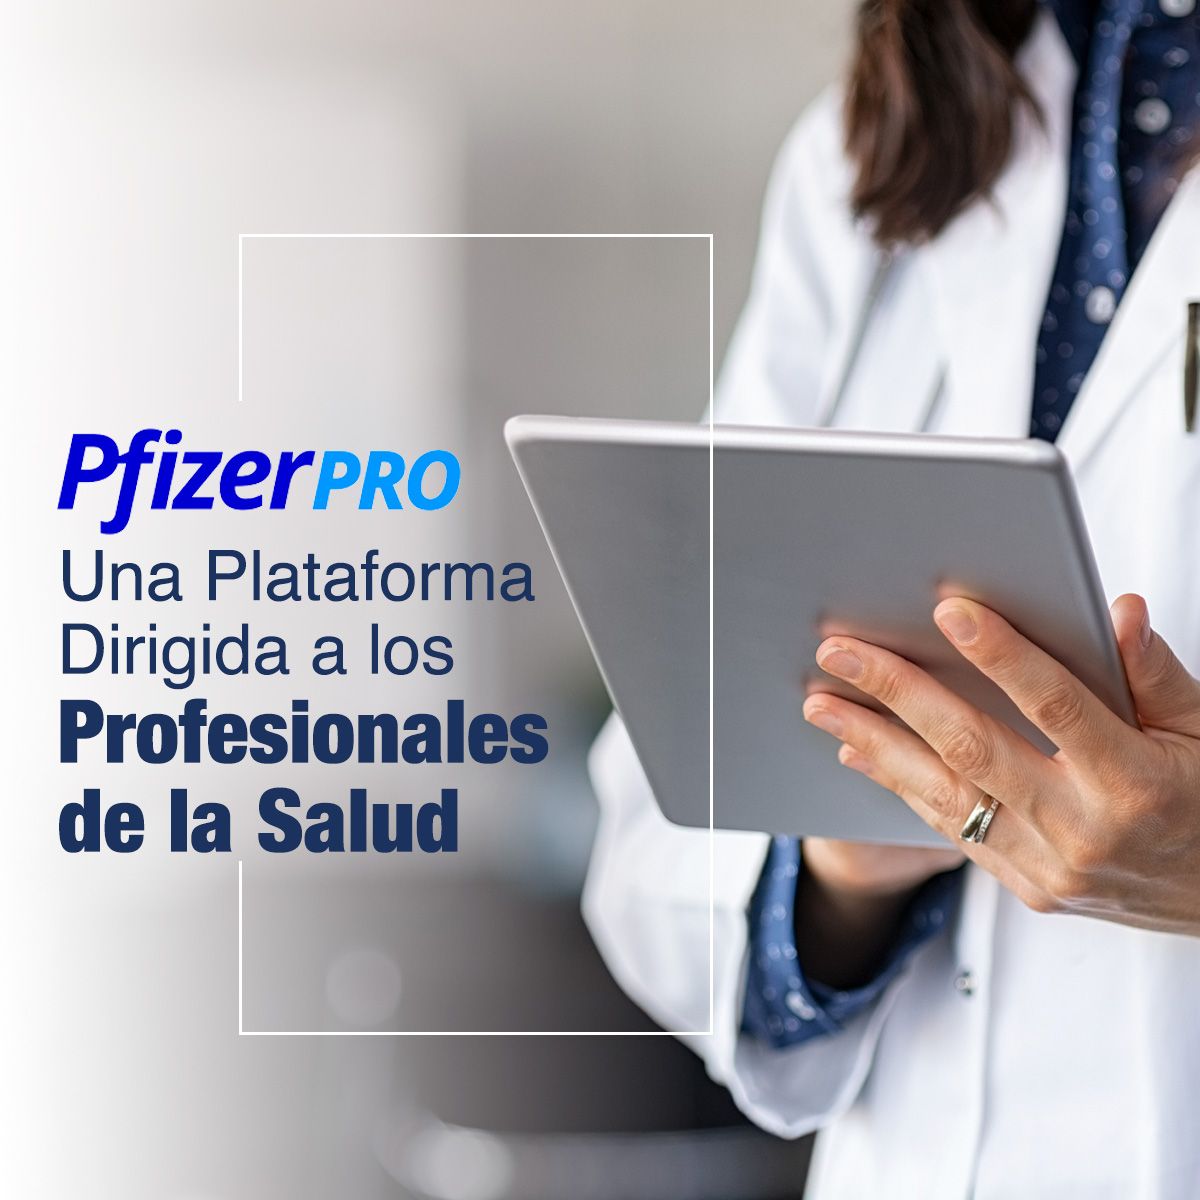 PfizerPro: Una Plataforma Dirigida a los Profesionales de la Salud